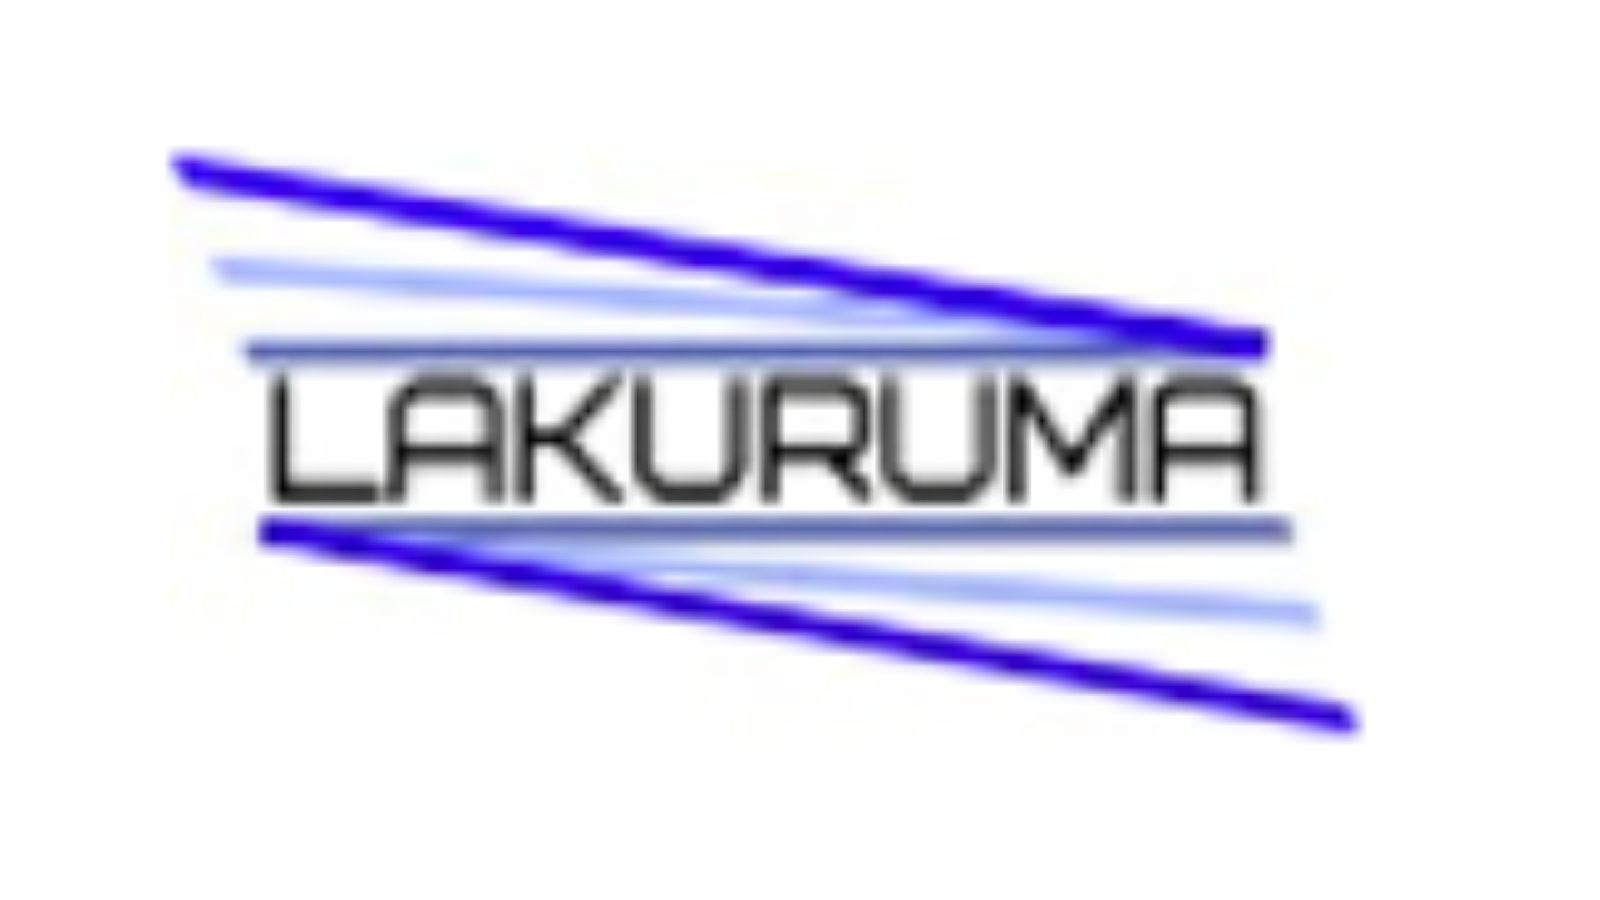 Lakuruma  ，为联网车辆开发车对基础设施 (V2I) 和车对车 (V2V) 光通信系统